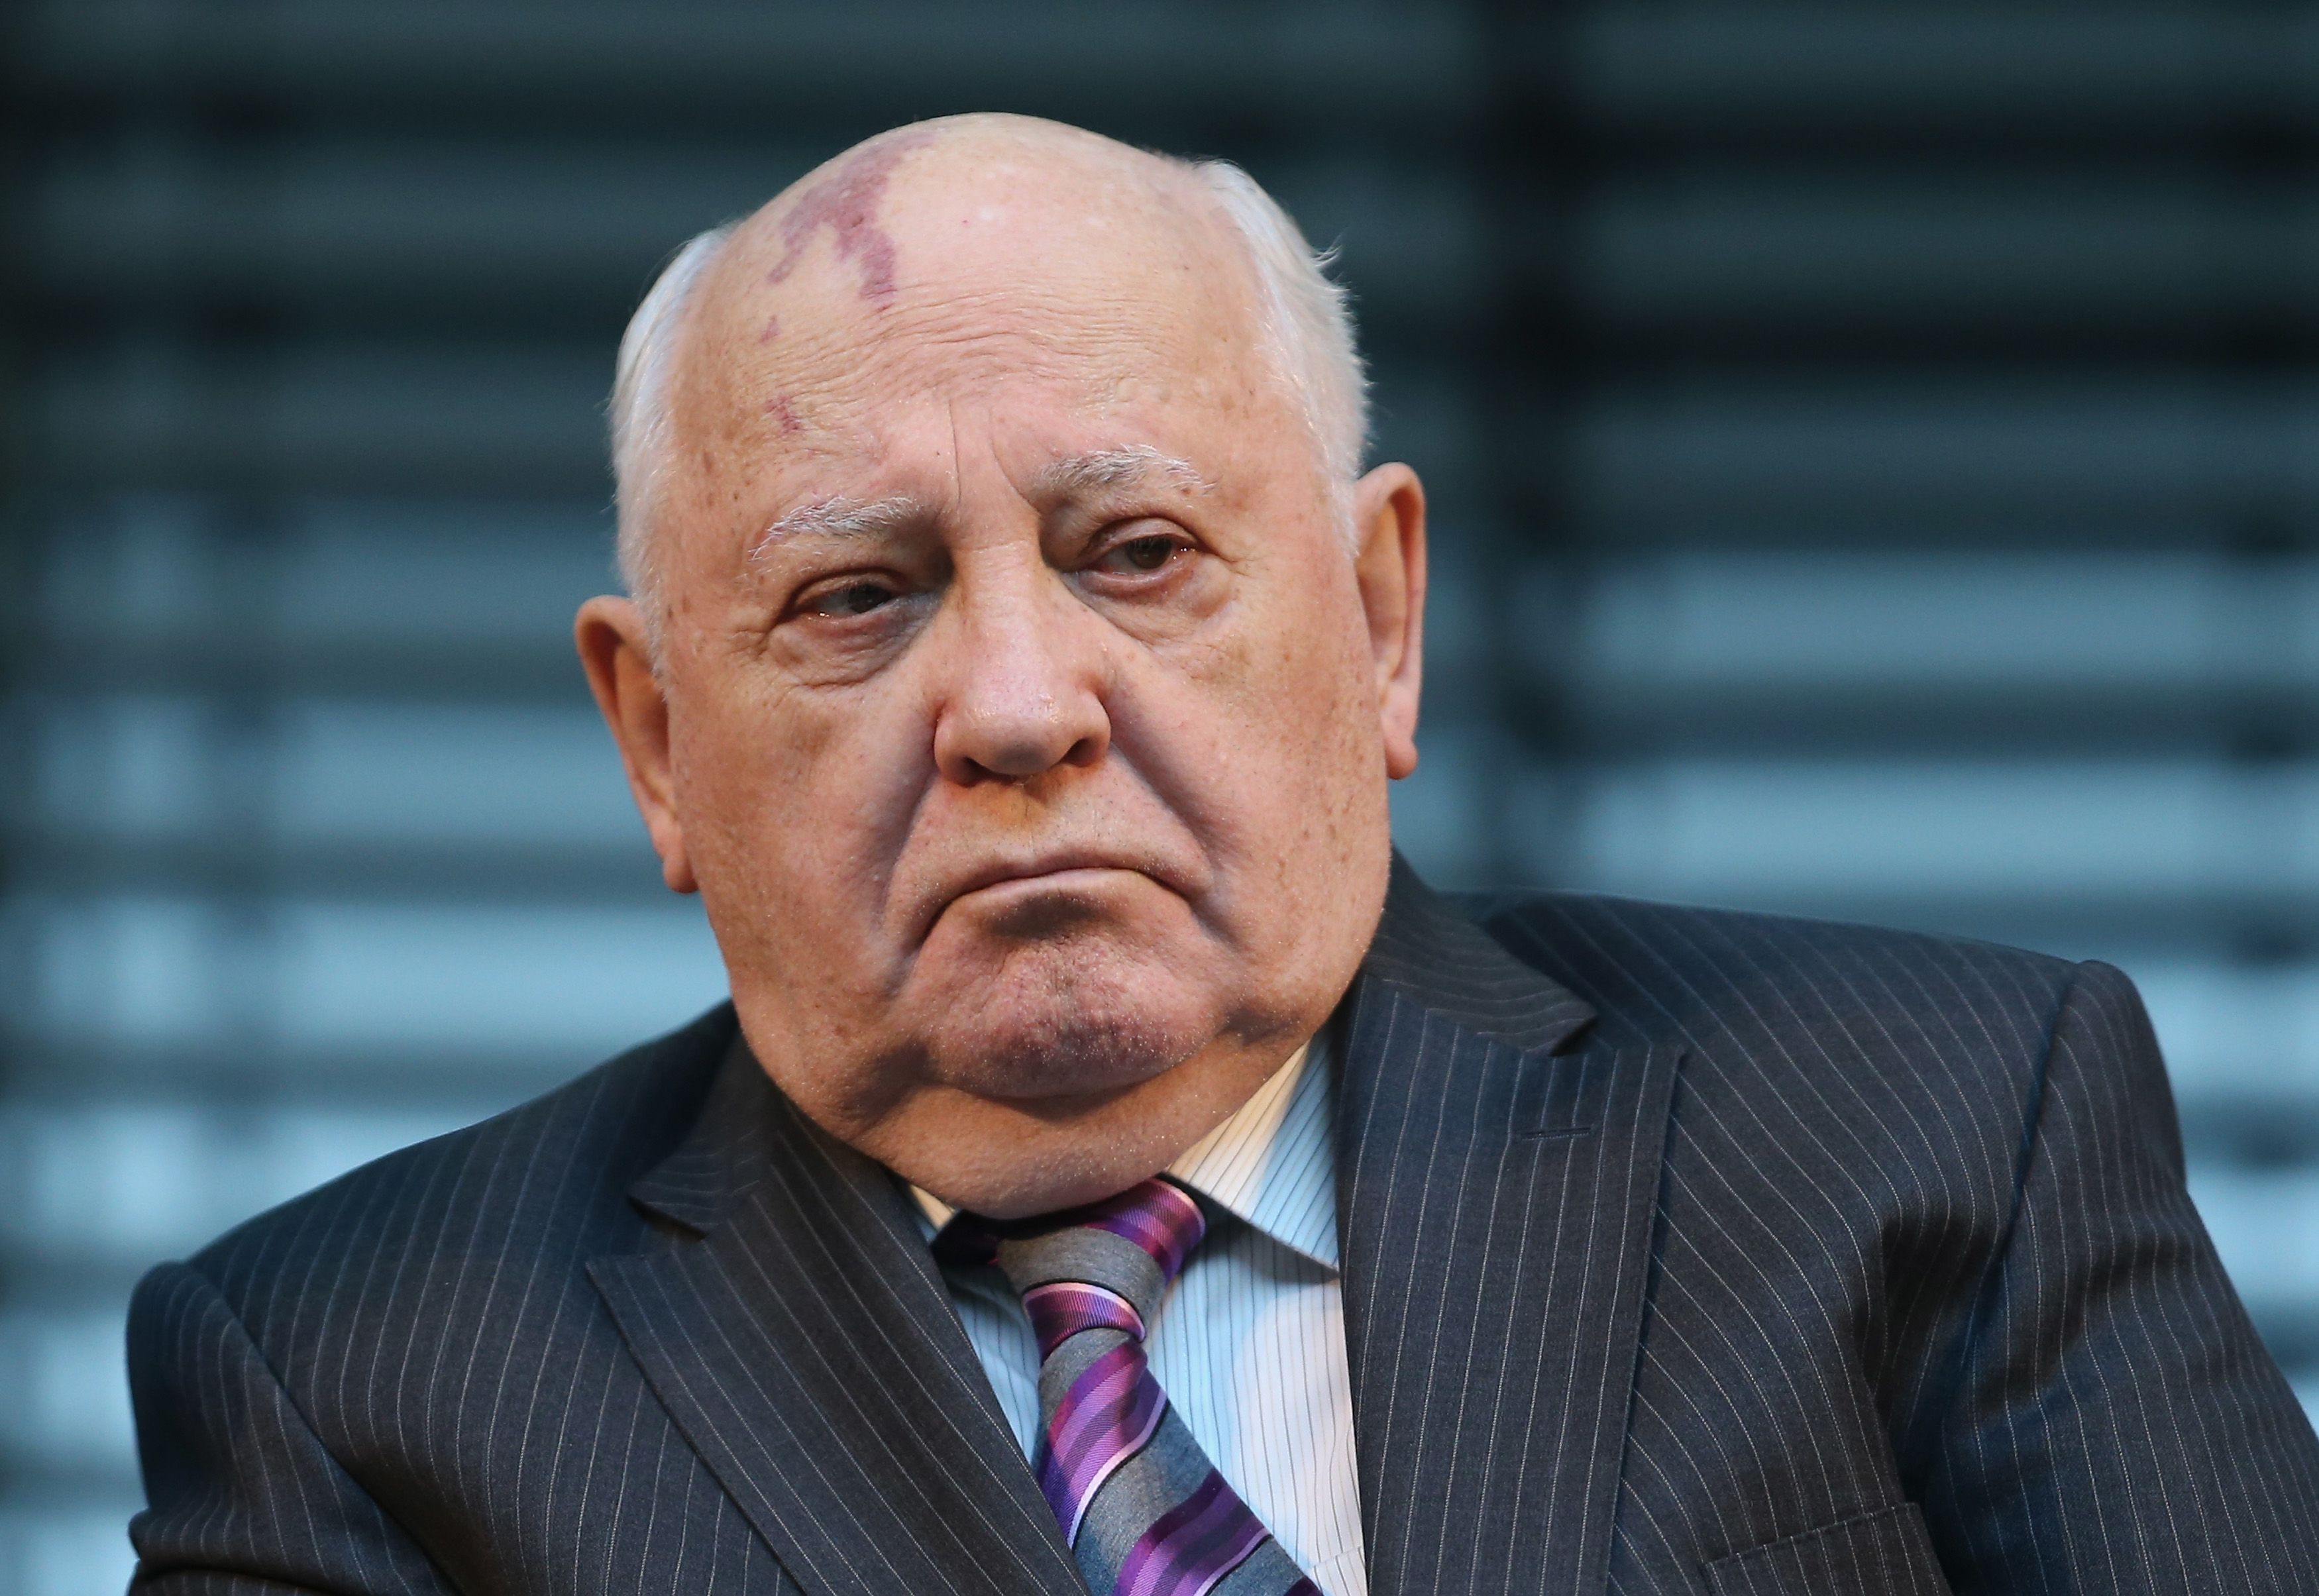 Mikhail Gorbachev is not dead